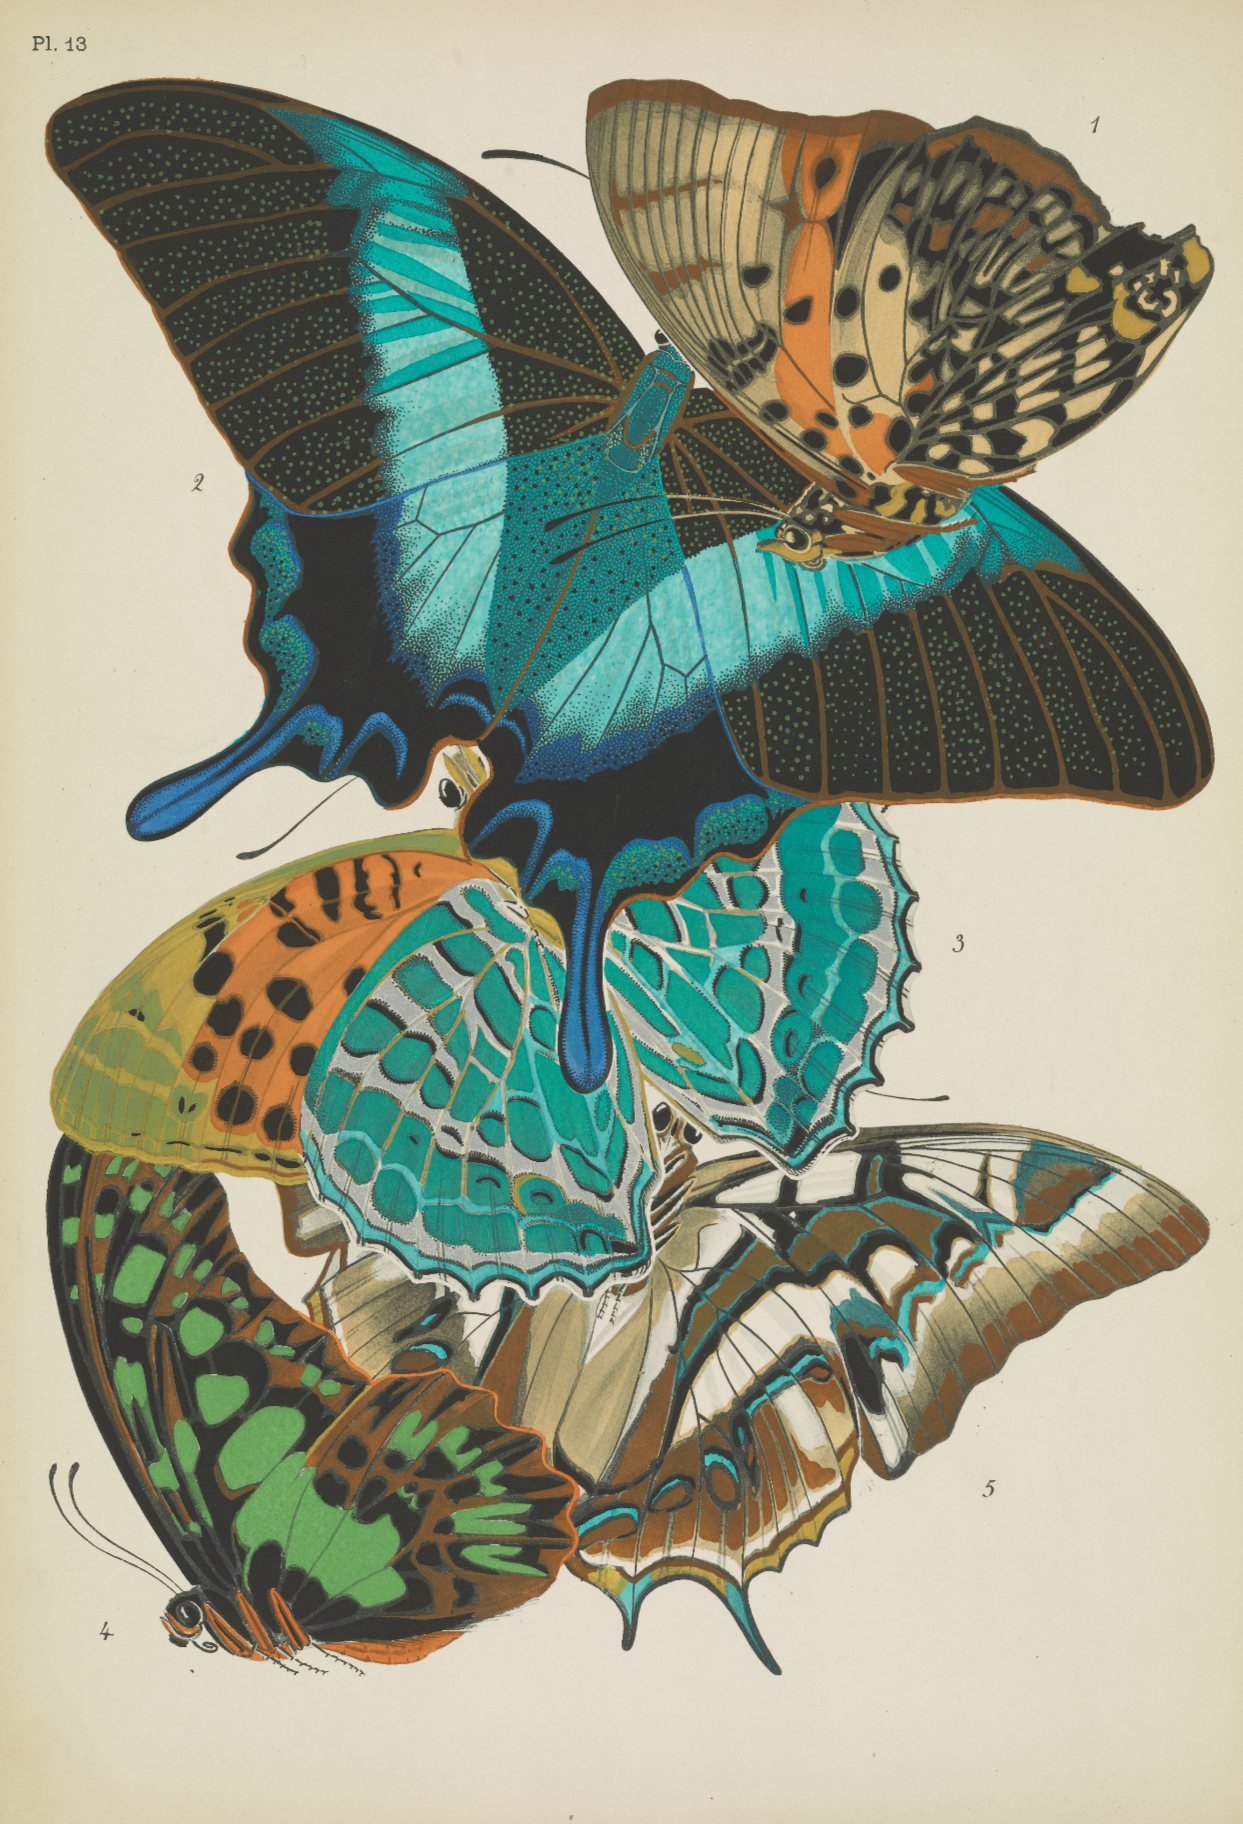 Papillons (plate 13) by Emile-Allain Séguy, 1925 - Postcard